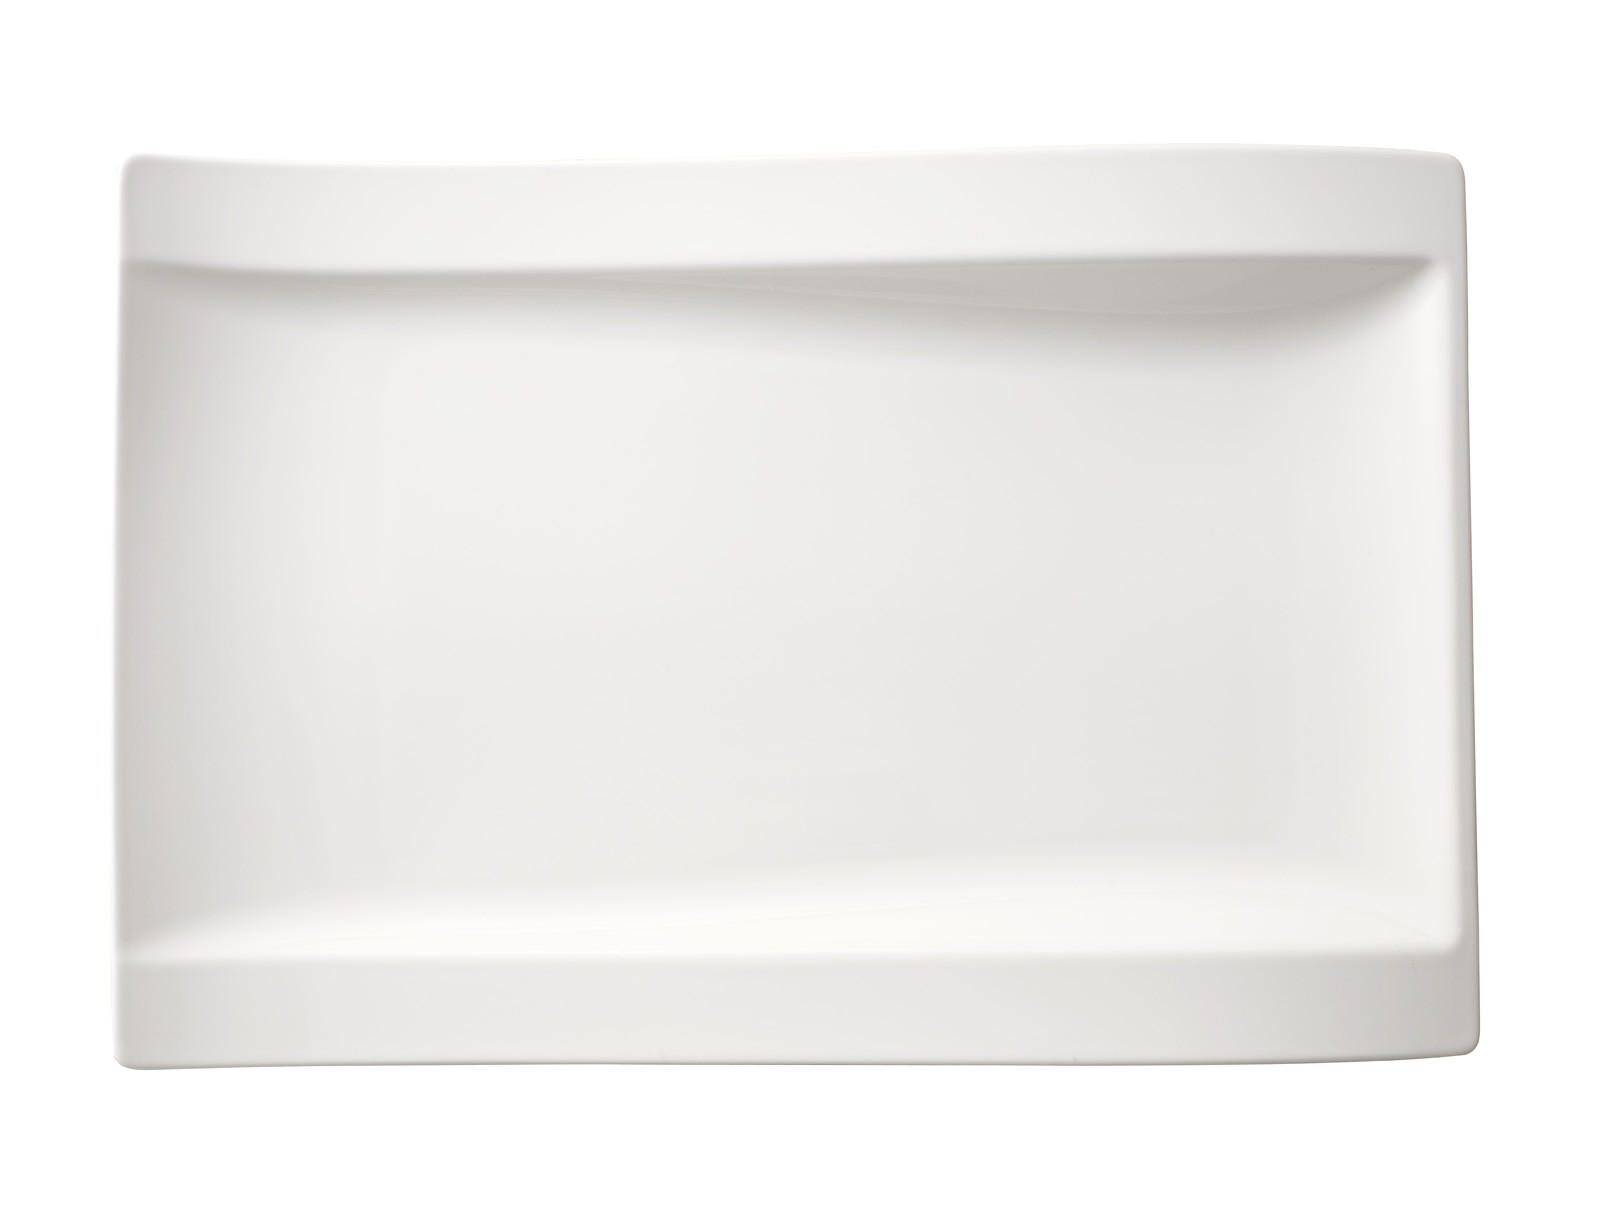 SPEISETELLER New Wave Porzellan  - Weiß, Basics, Keramik (37cm) - Villeroy & Boch